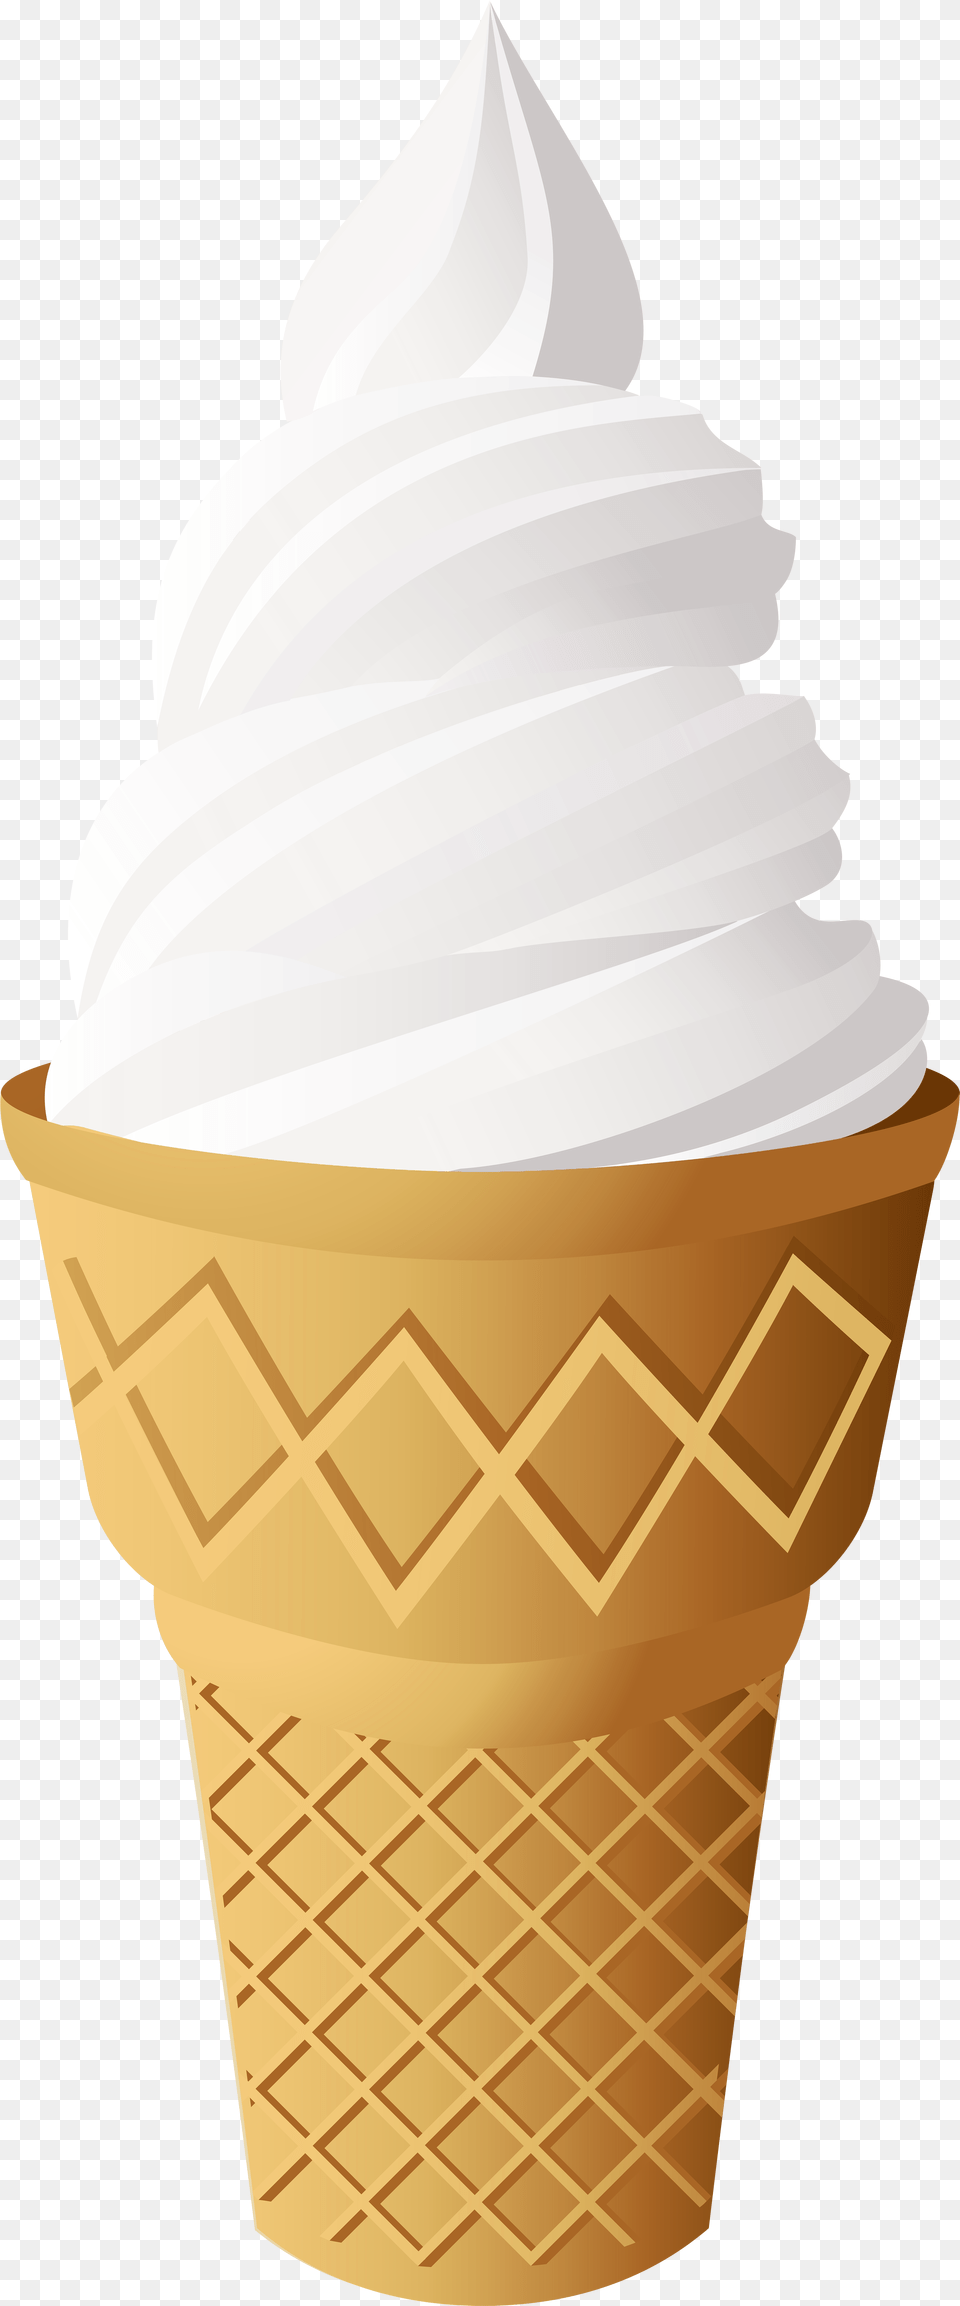 Vanilla Ice Cream Cone Clip Art Vanilla Ice Cream Clipart, Dessert, Food, Ice Cream, Soft Serve Ice Cream Free Transparent Png